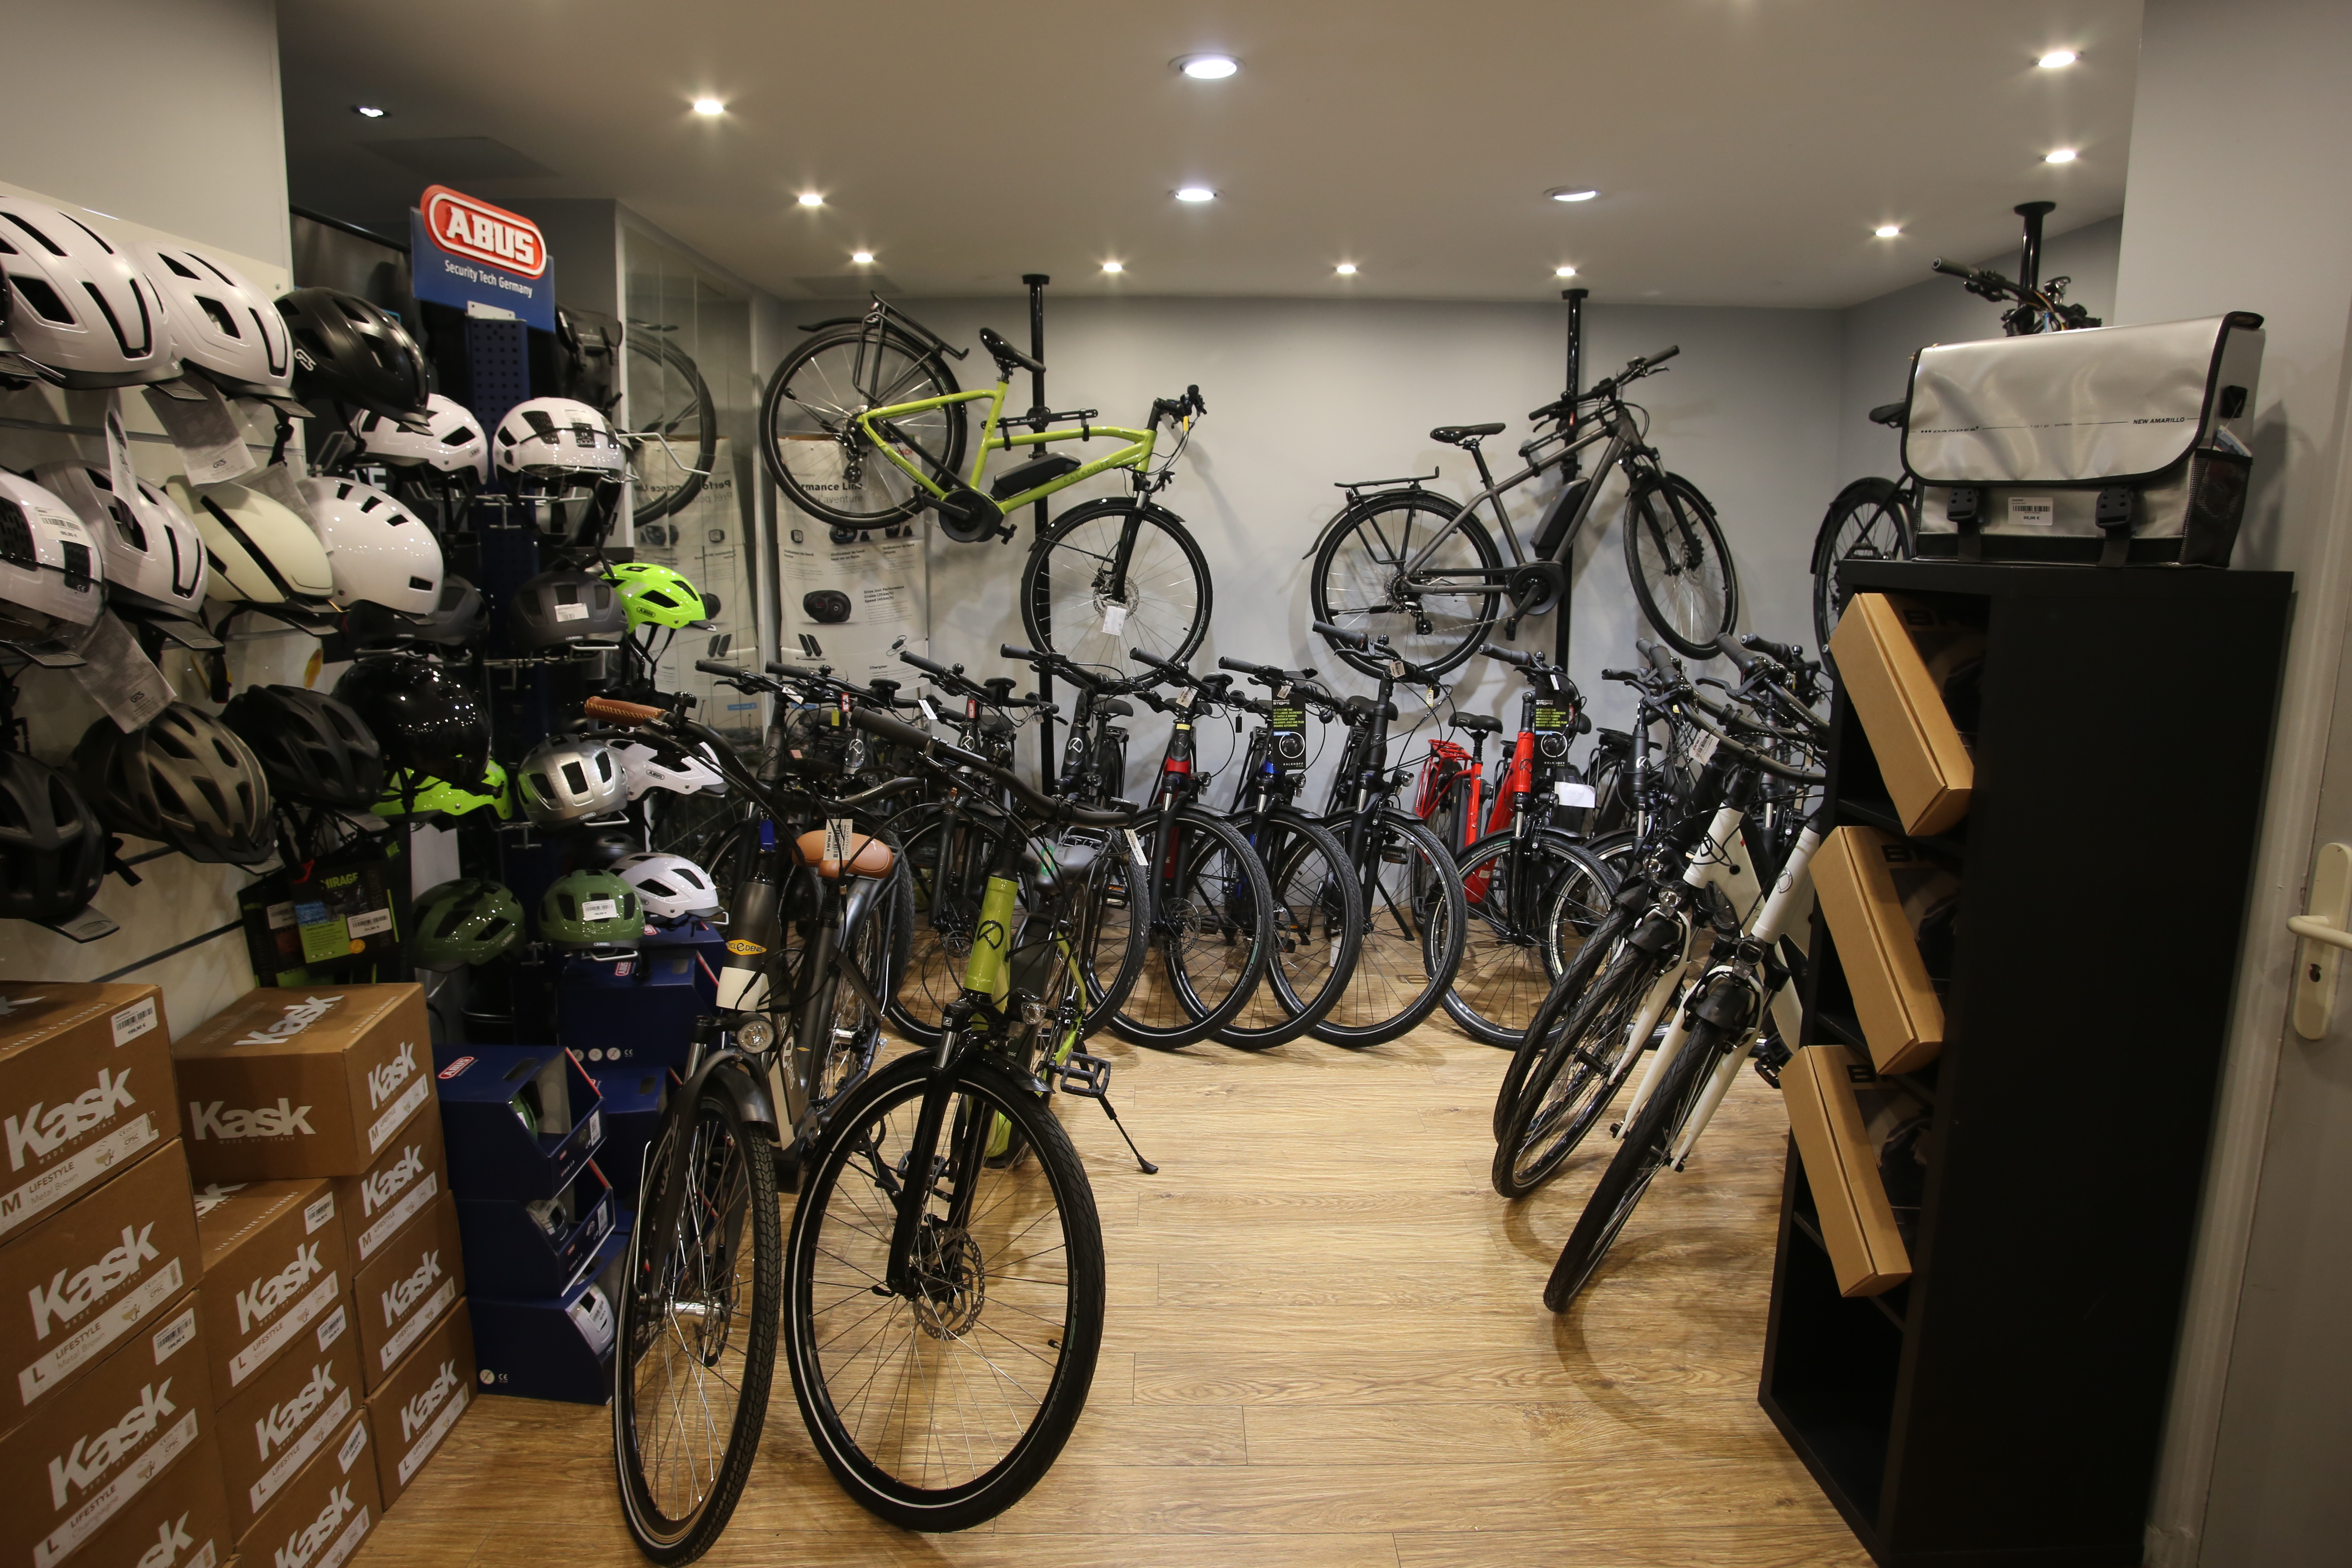 Les vélos électriques Kalkhoff, Focus, KTM, BiClou et Cycles Denis au magasin AC-Emotion Grand-Armée, 40 avenue de la Grande Armée 75017 Paris